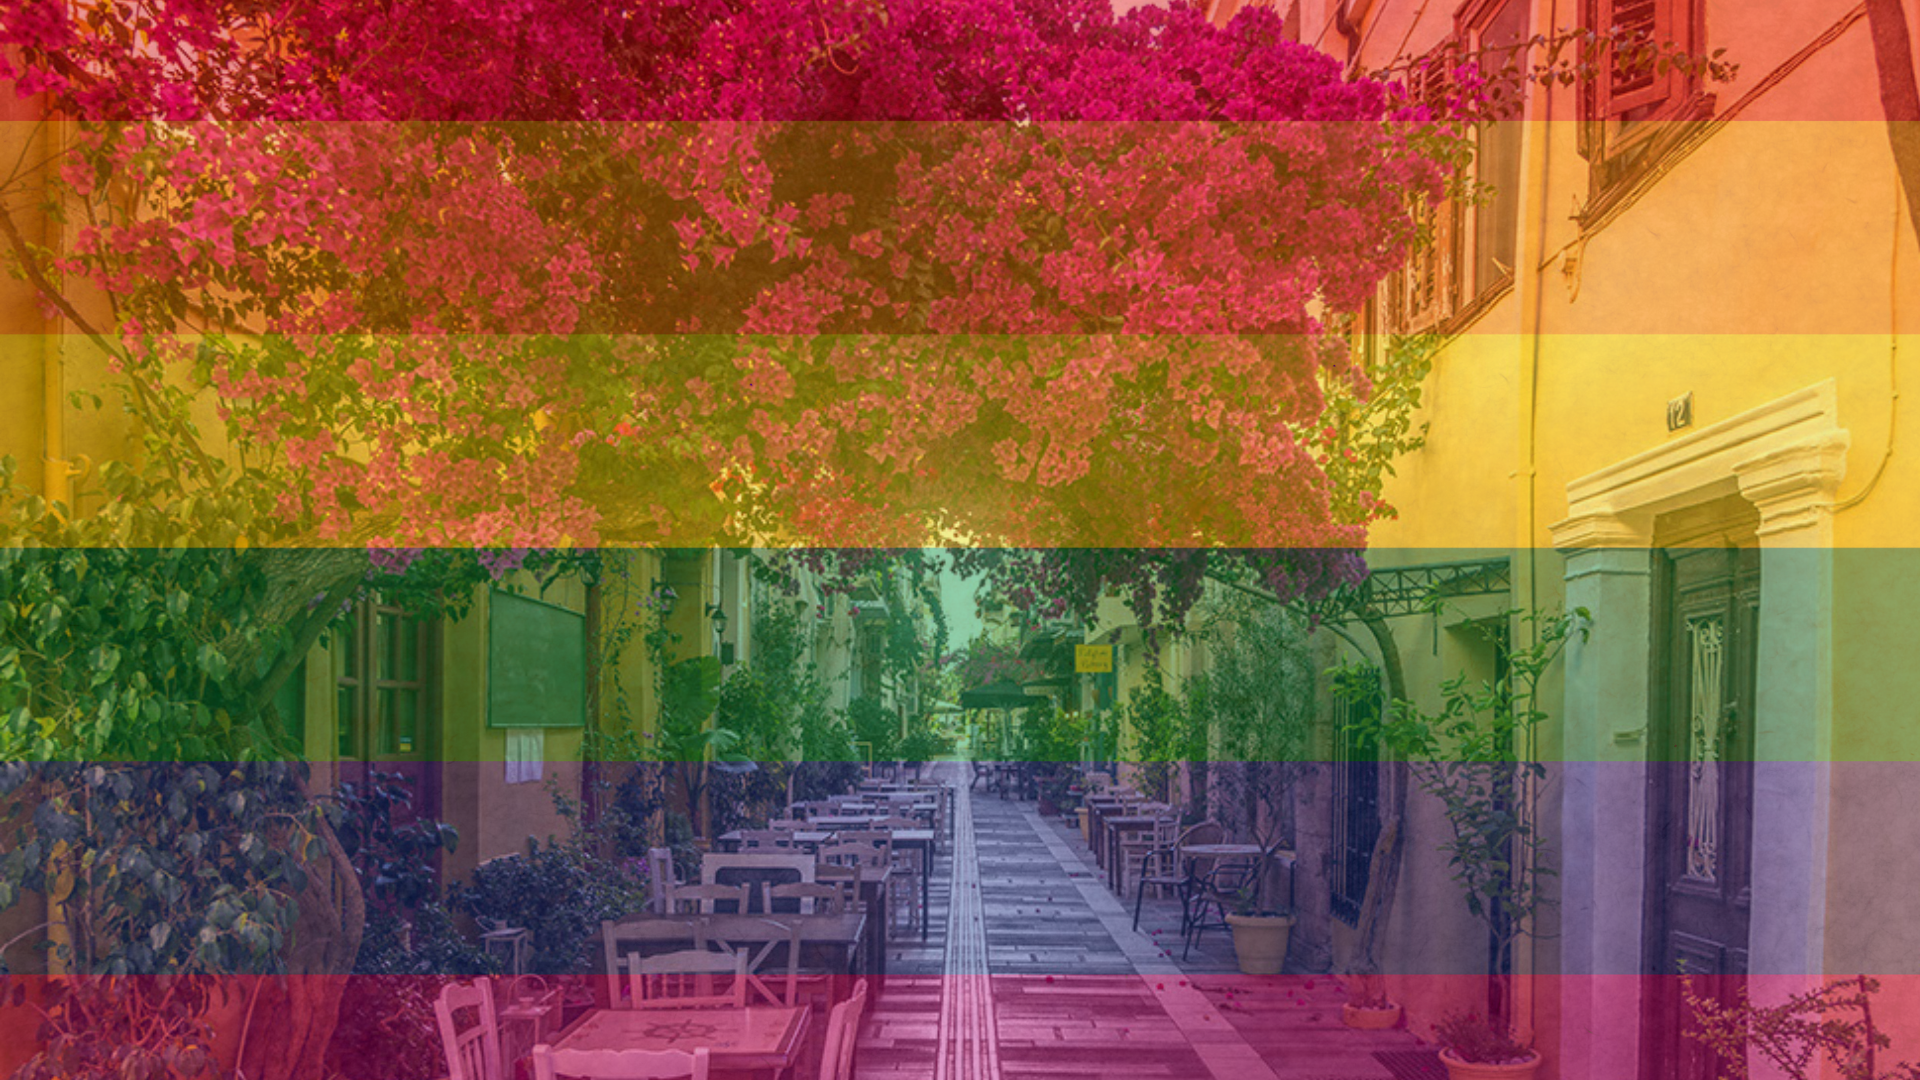 Δελτίο Τύπου για την ομοφοβική επίθεση στο Ναύπλιο